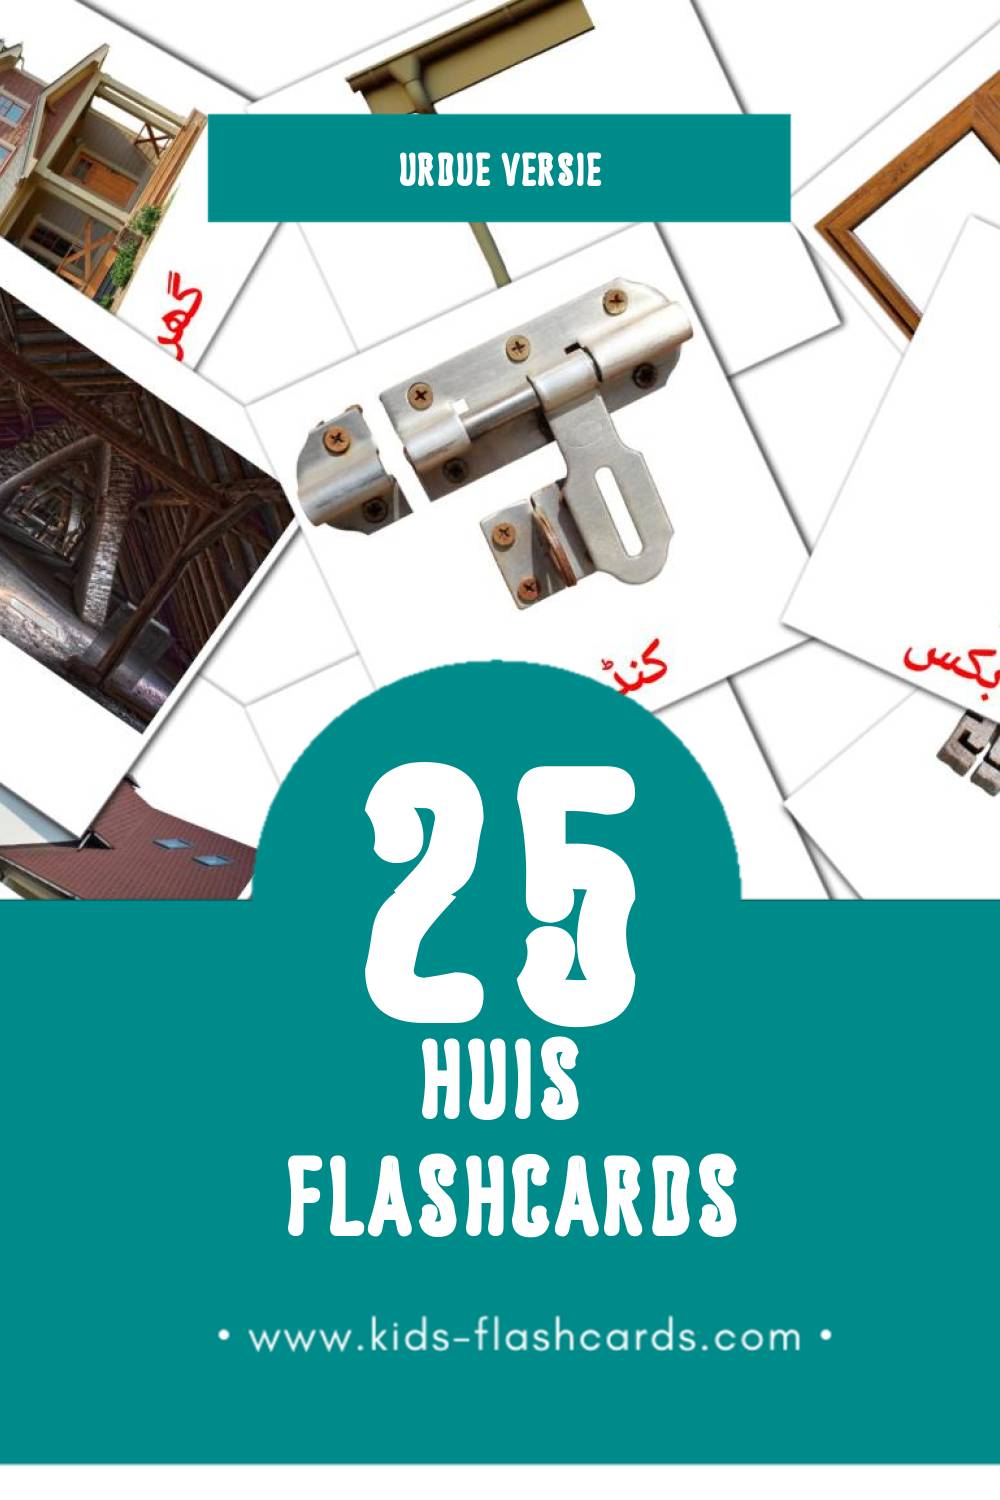 Visuele ہاؤسنگ Flashcards voor Kleuters (25 kaarten in het Urdu)